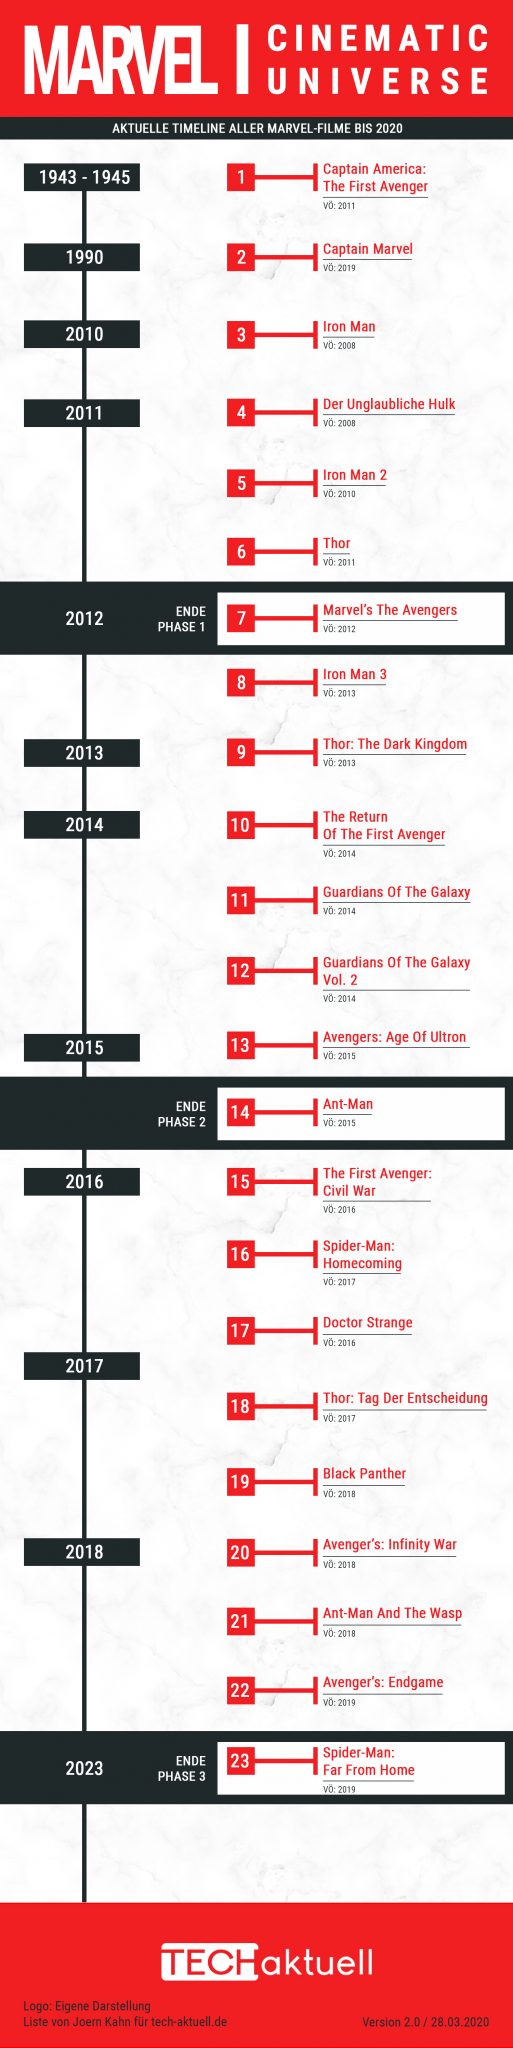 Chronologische Reihenfolge Marvel Filme